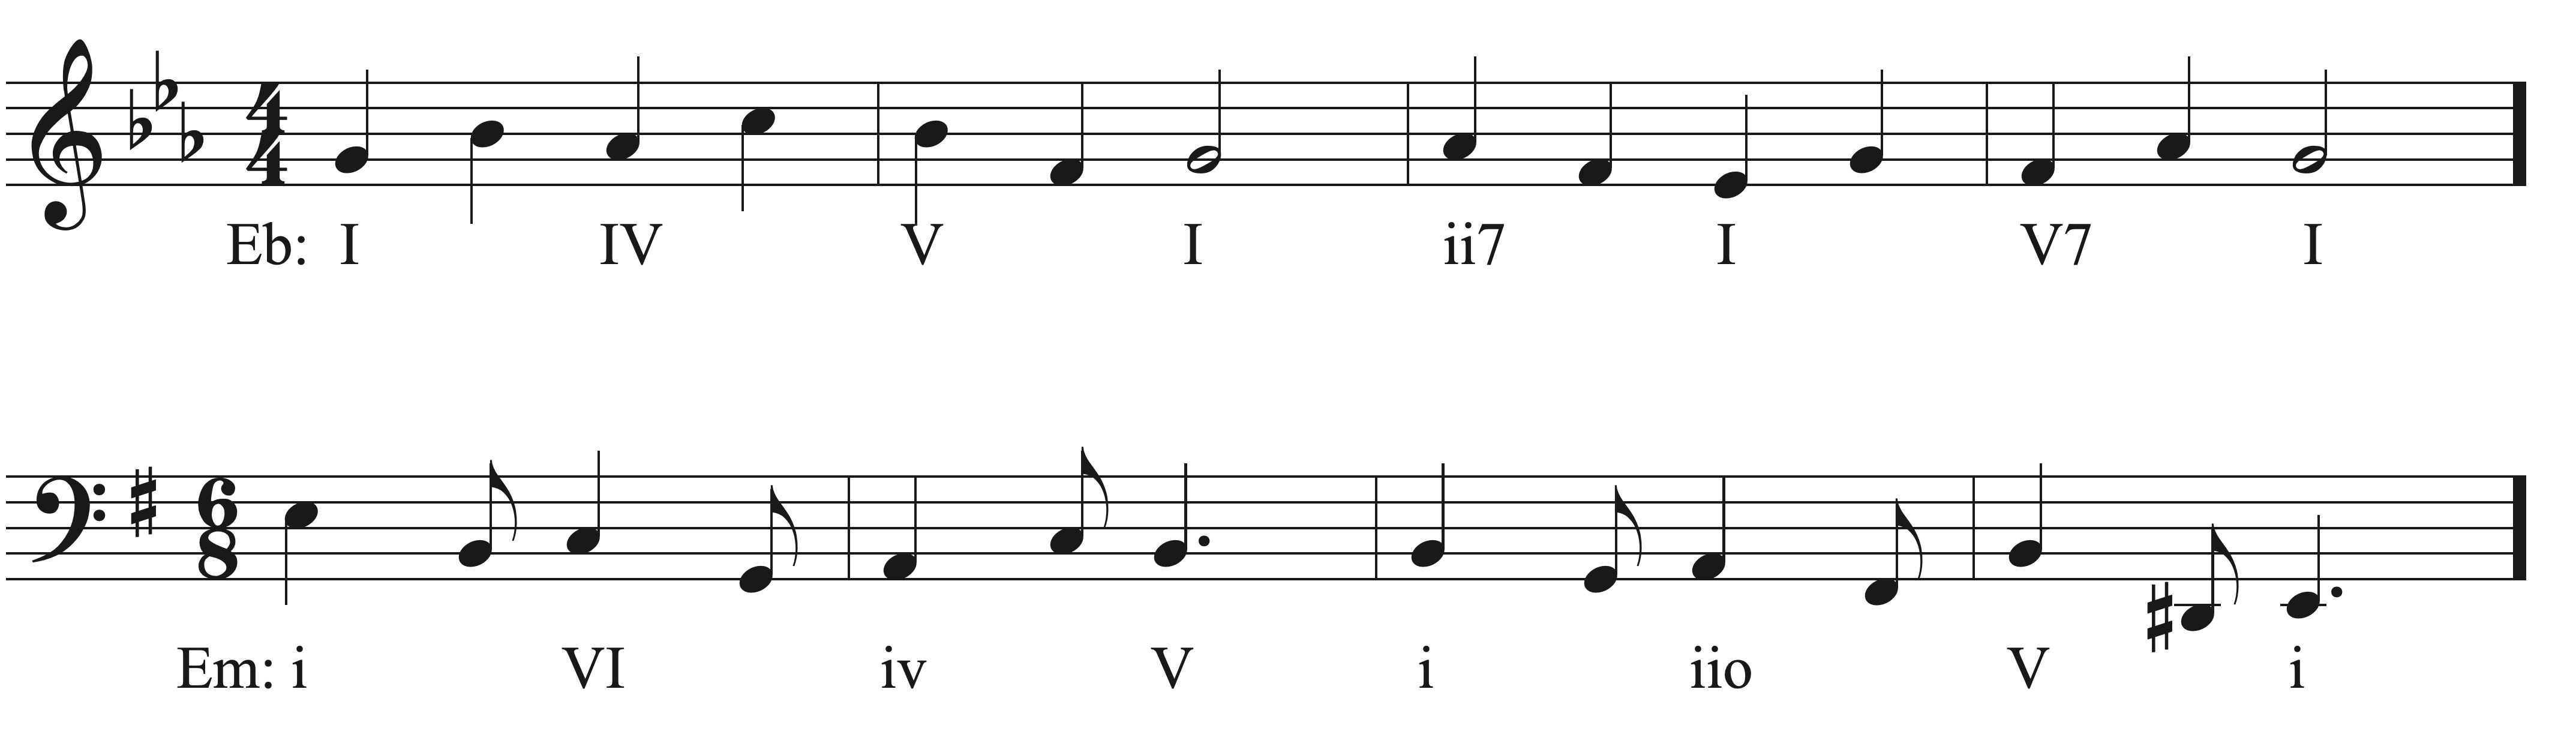 Embellishing Tones Sight Singing exercise example